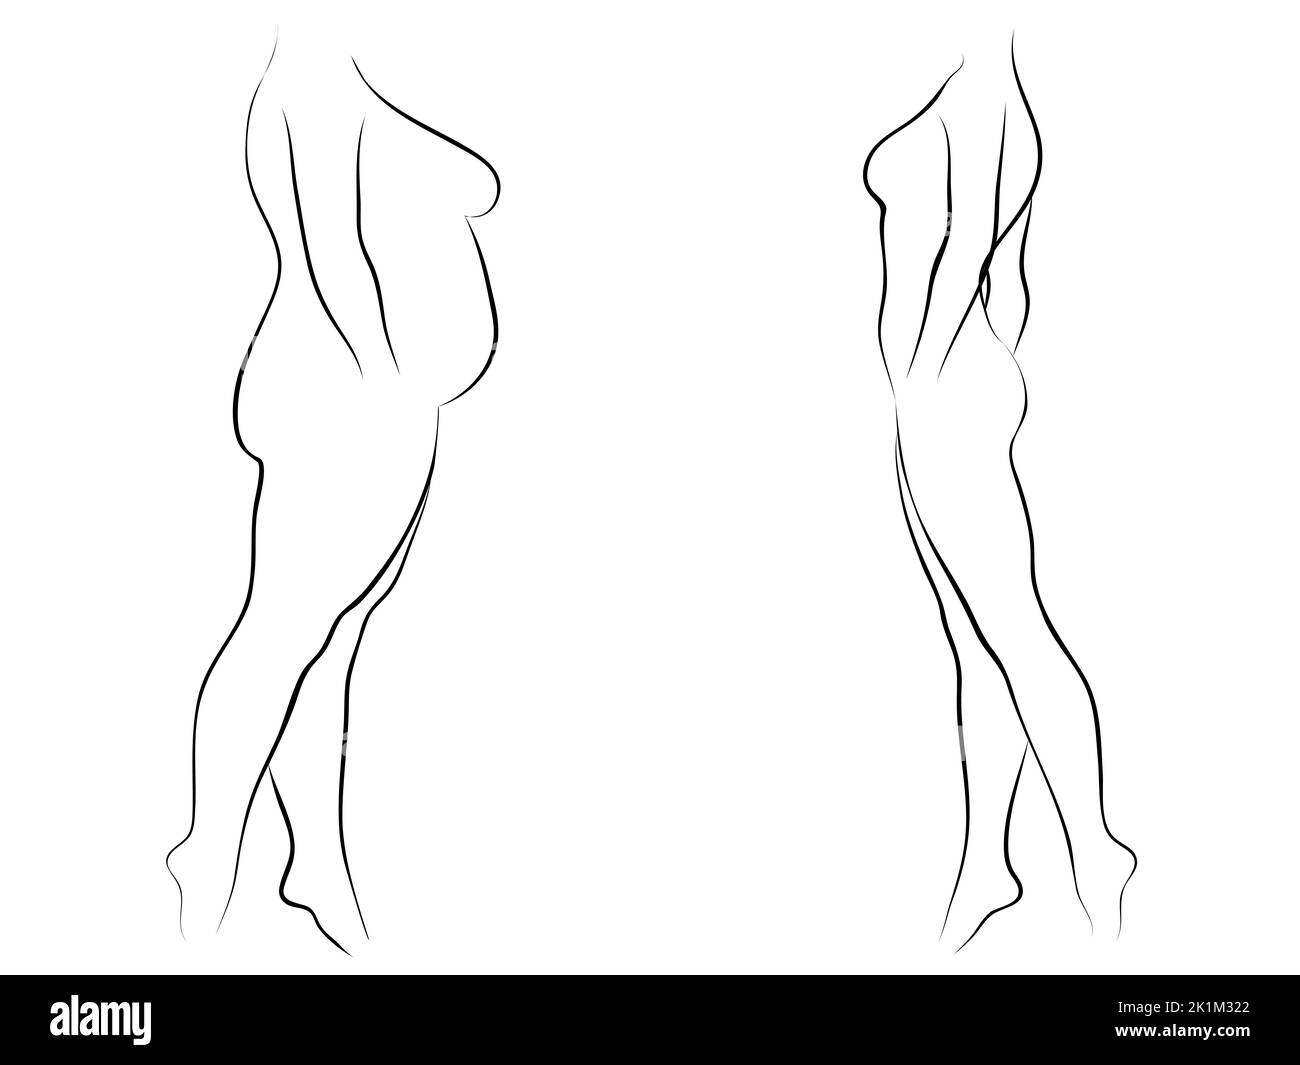 Concettuale grasso sovrappeso femminile vs Slim FIT corpo sano dopo perdita di peso o dieta con muscoli sottile giovane donna. 3D illustrazione per il fitness Foto Stock